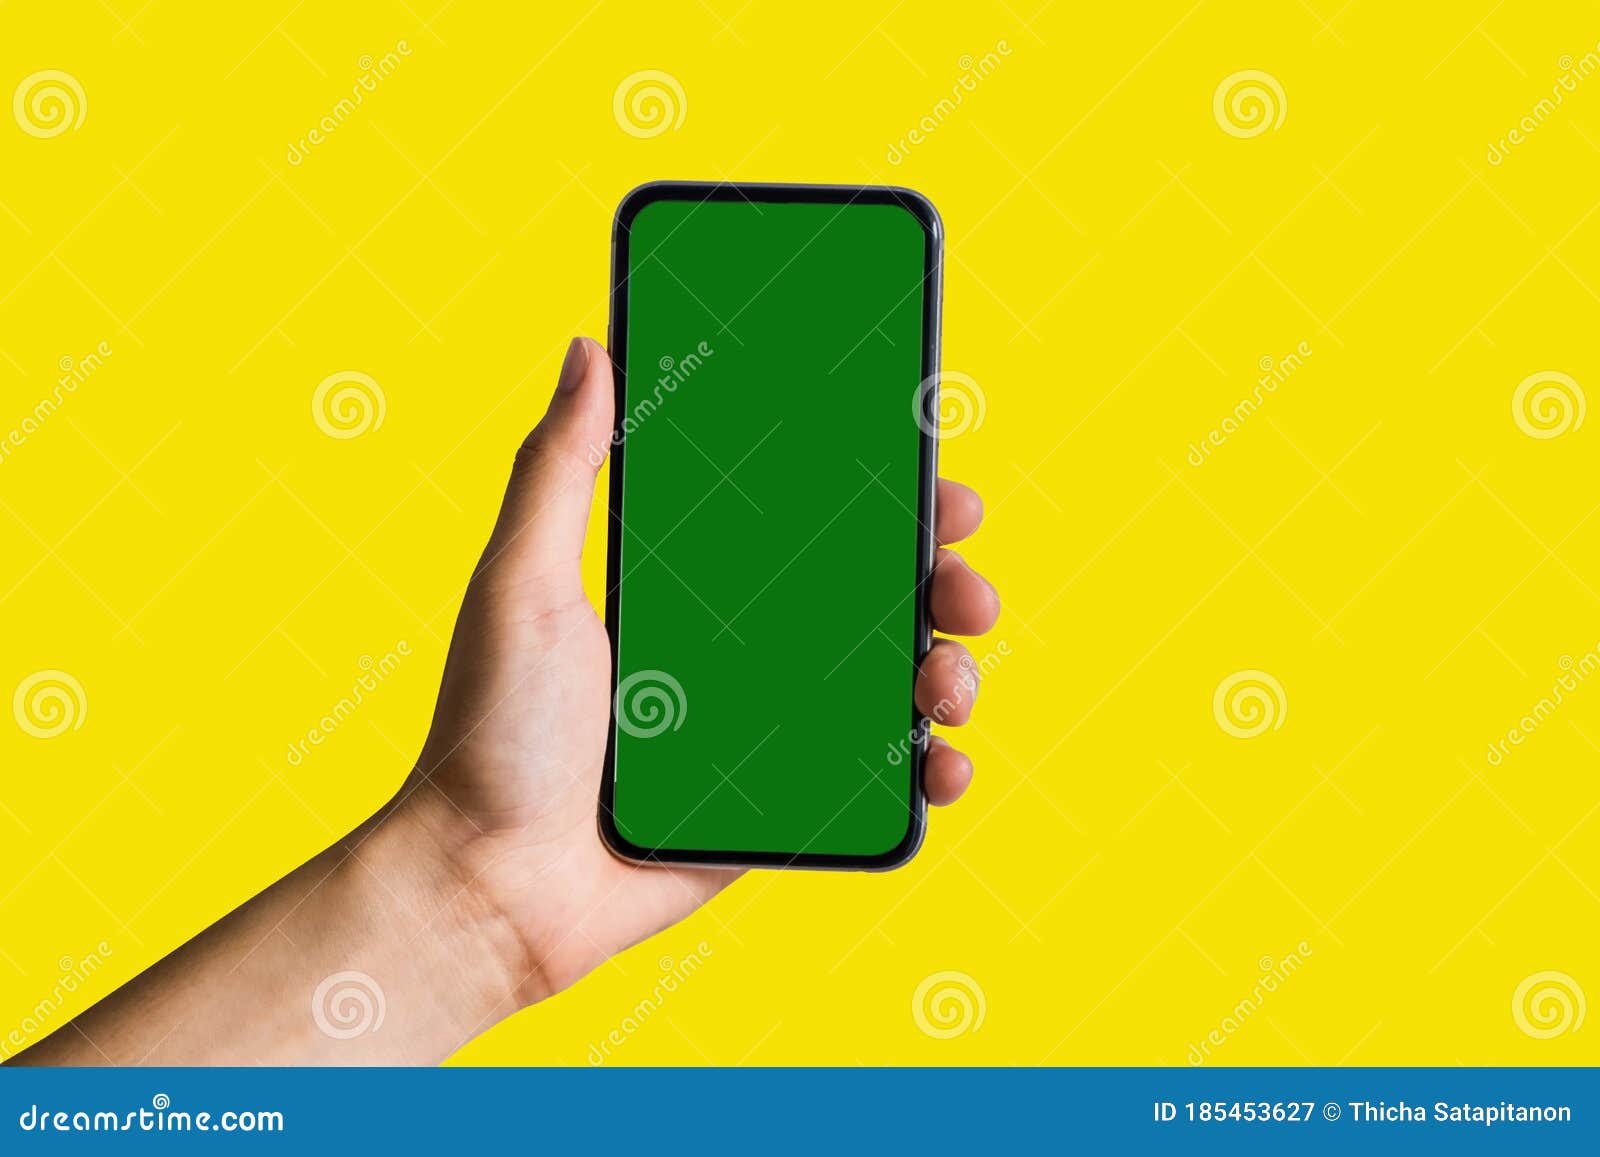 Nếu bạn đang tìm kiếm một chiếc điện thoại di động với màn hình xanh đẹp và nổi bật, hãy xem hình ảnh này! Sức hút của nó chắc chắn sẽ khiến bạn mê mẩn và muốn sở hữu ngay một chiếc đến từ hãng nào đó.